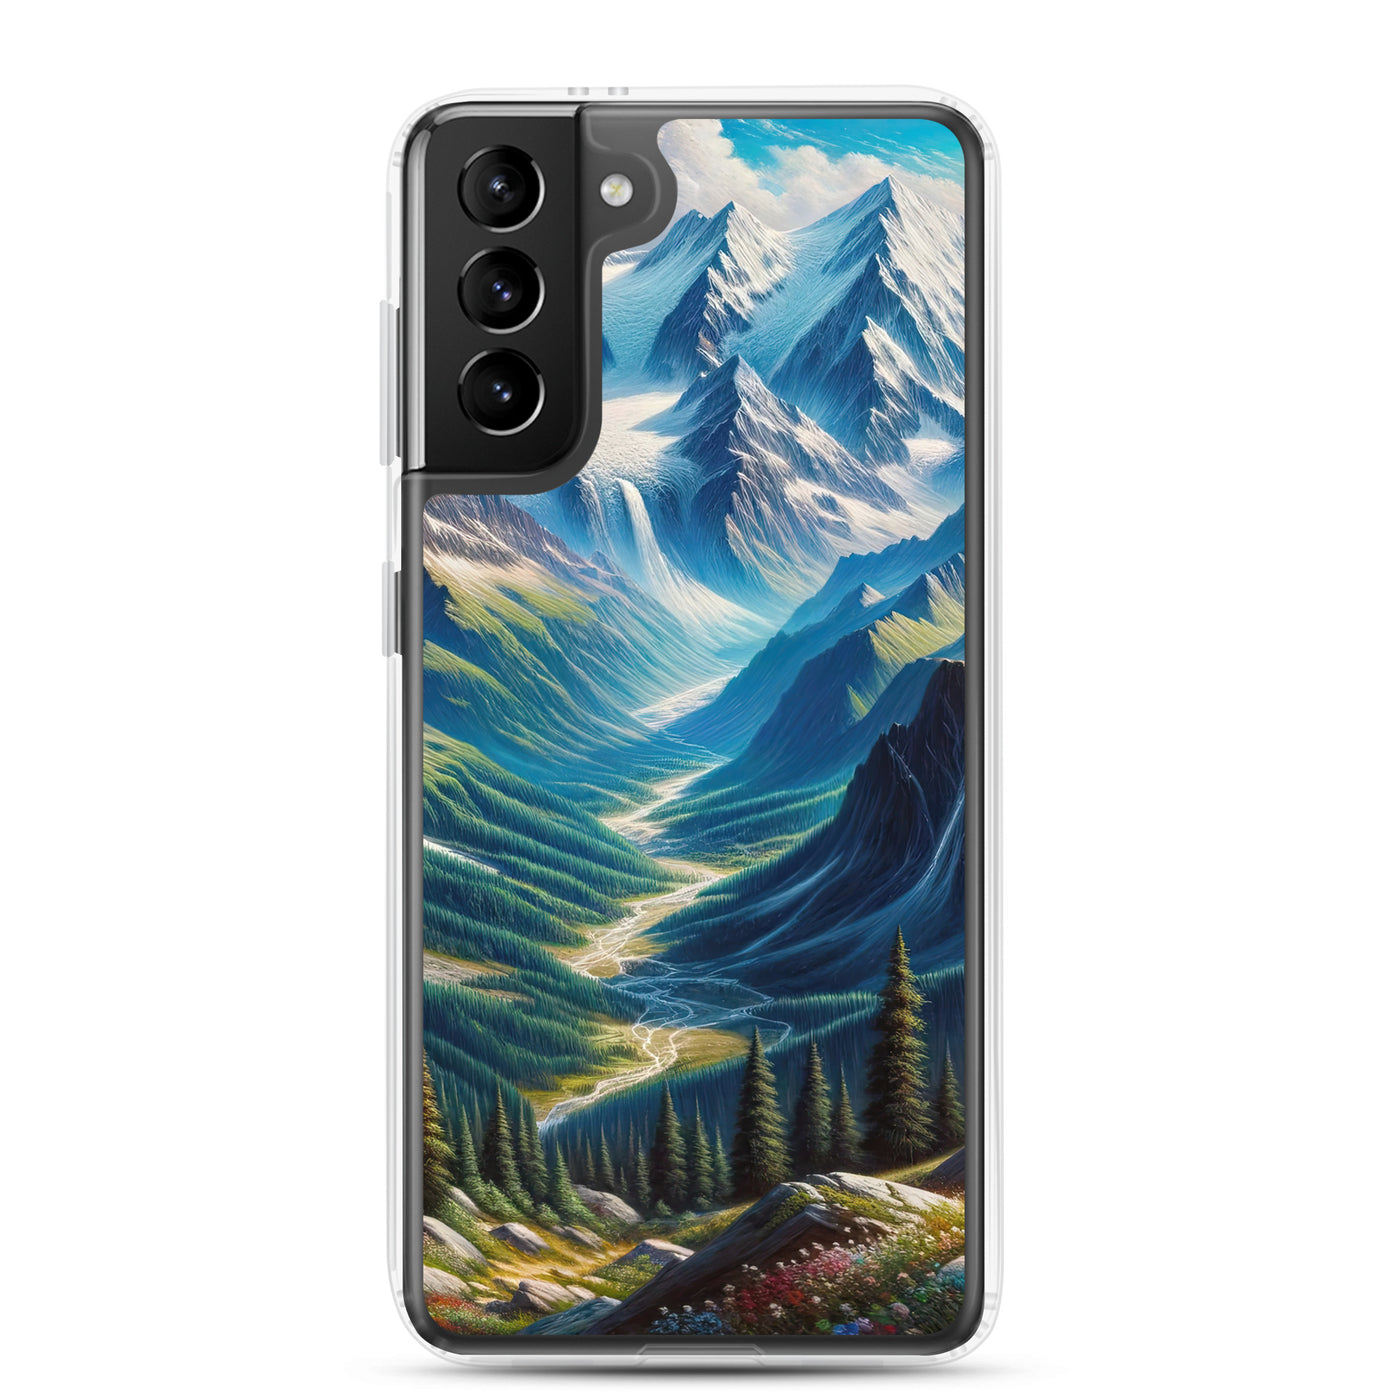 Panorama-Ölgemälde der Alpen mit schneebedeckten Gipfeln und schlängelnden Flusstälern - Samsung Schutzhülle (durchsichtig) berge xxx yyy zzz Samsung Galaxy S21 Plus